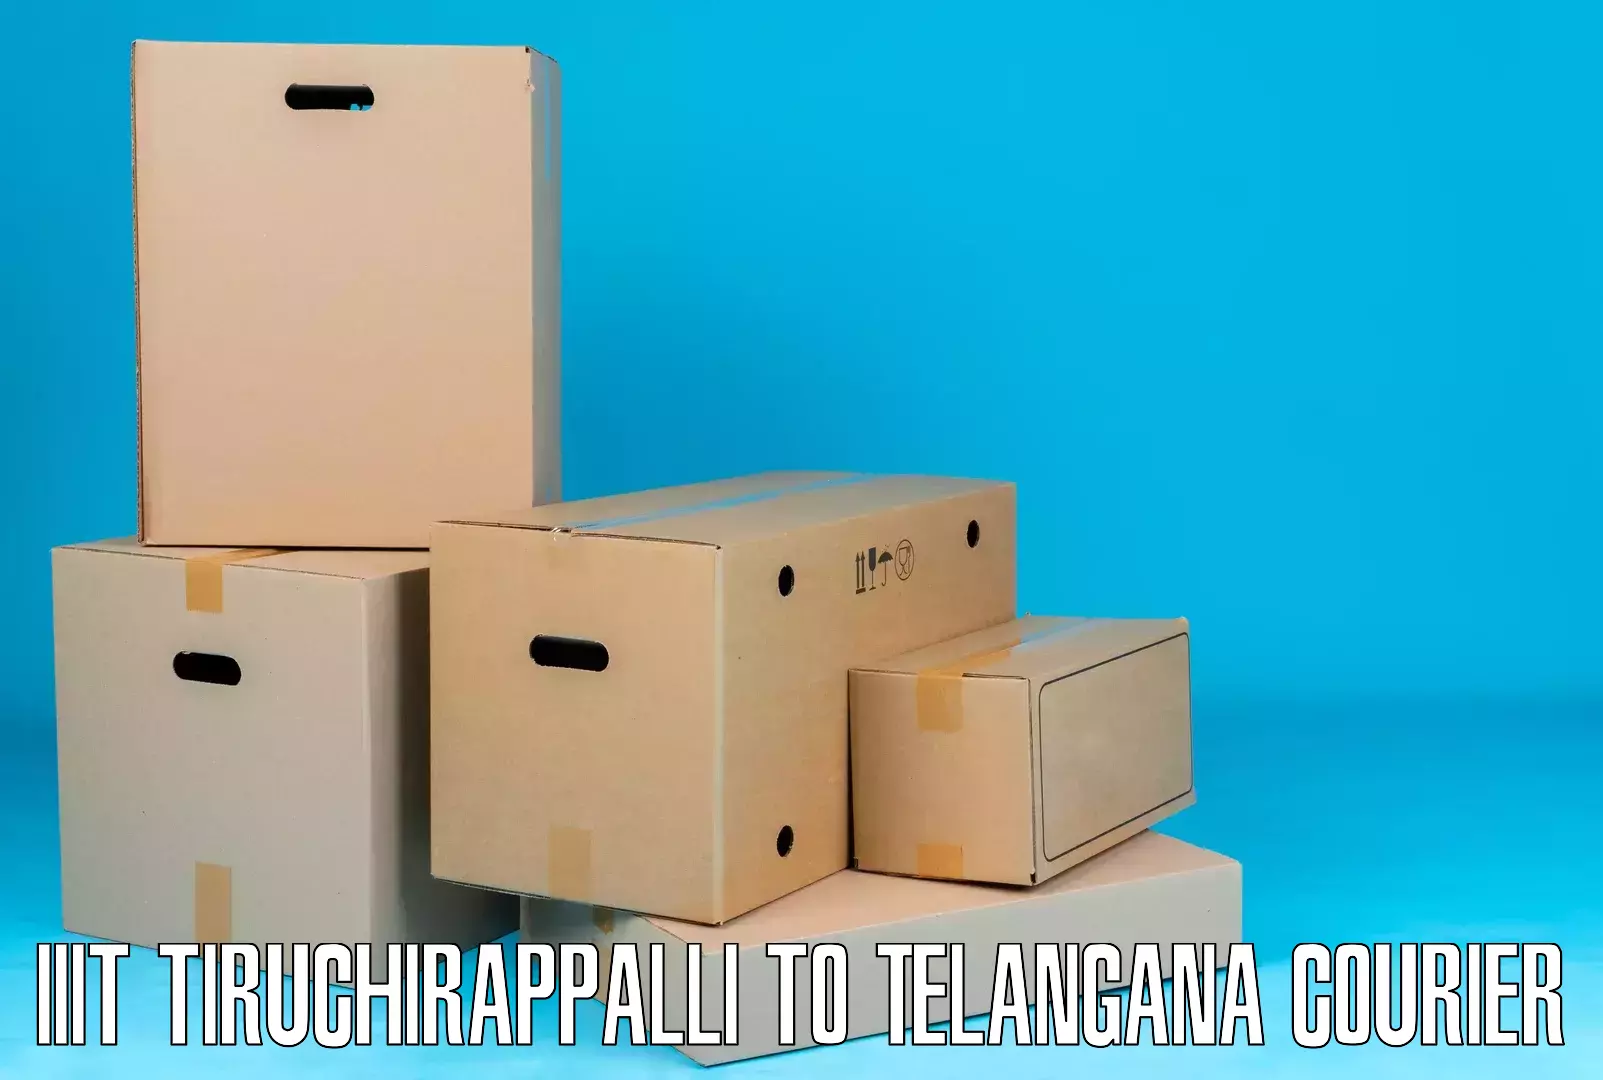 Specialized shipment handling IIIT Tiruchirappalli to Bhongir